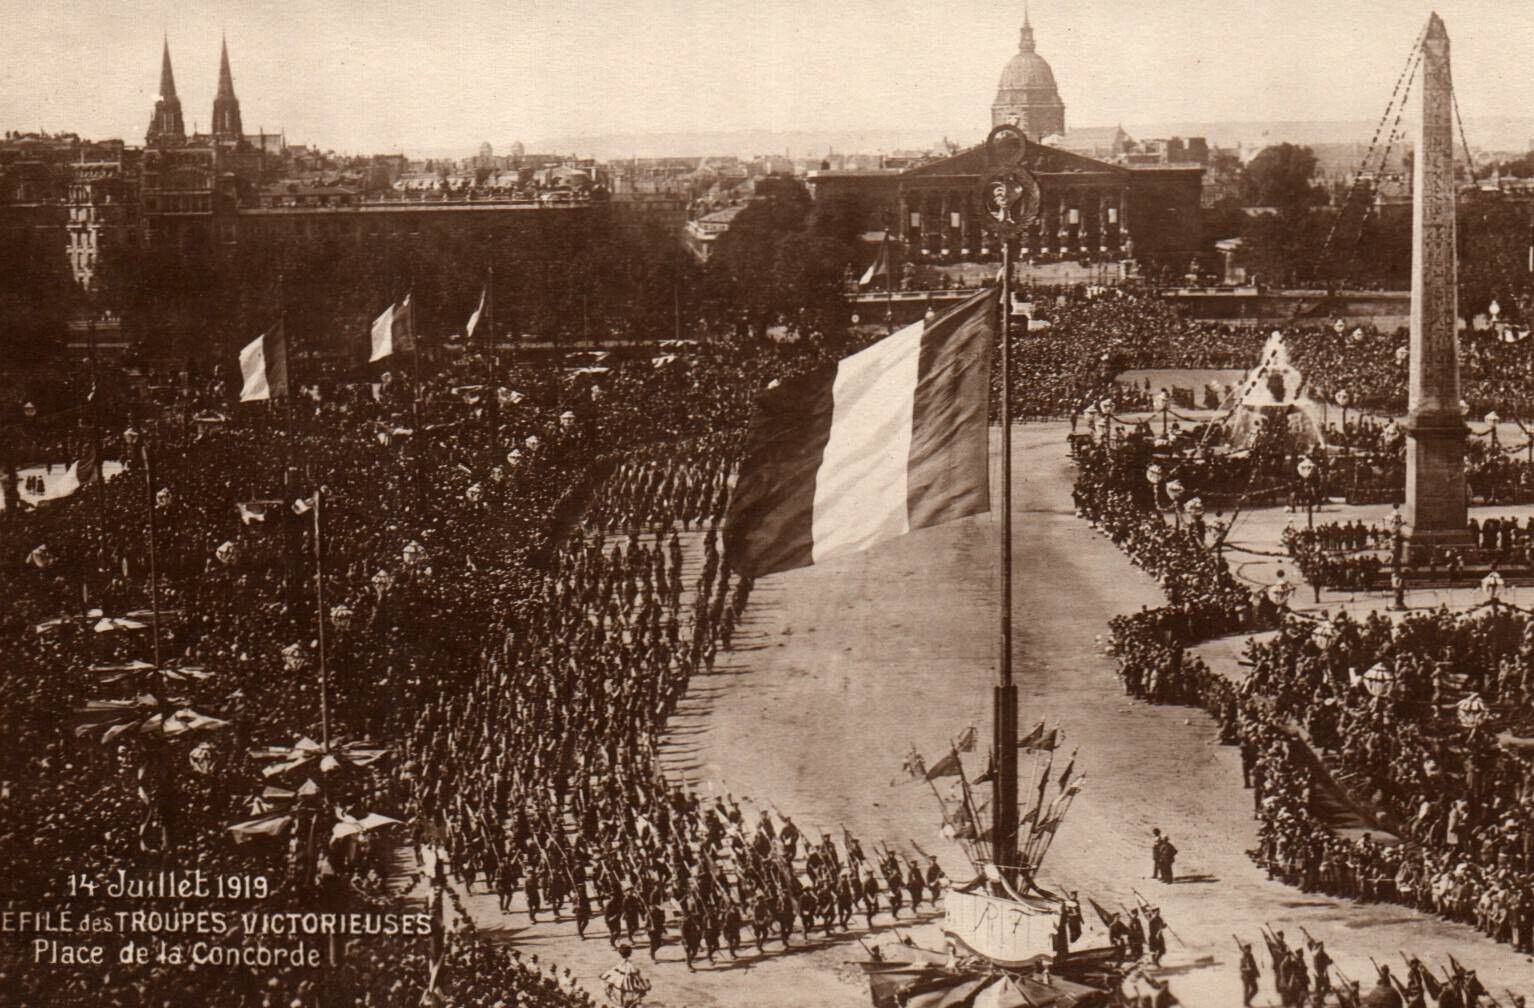 CPA PARIS 1919 - Parade of Victorious Troops - Place de la Concorde